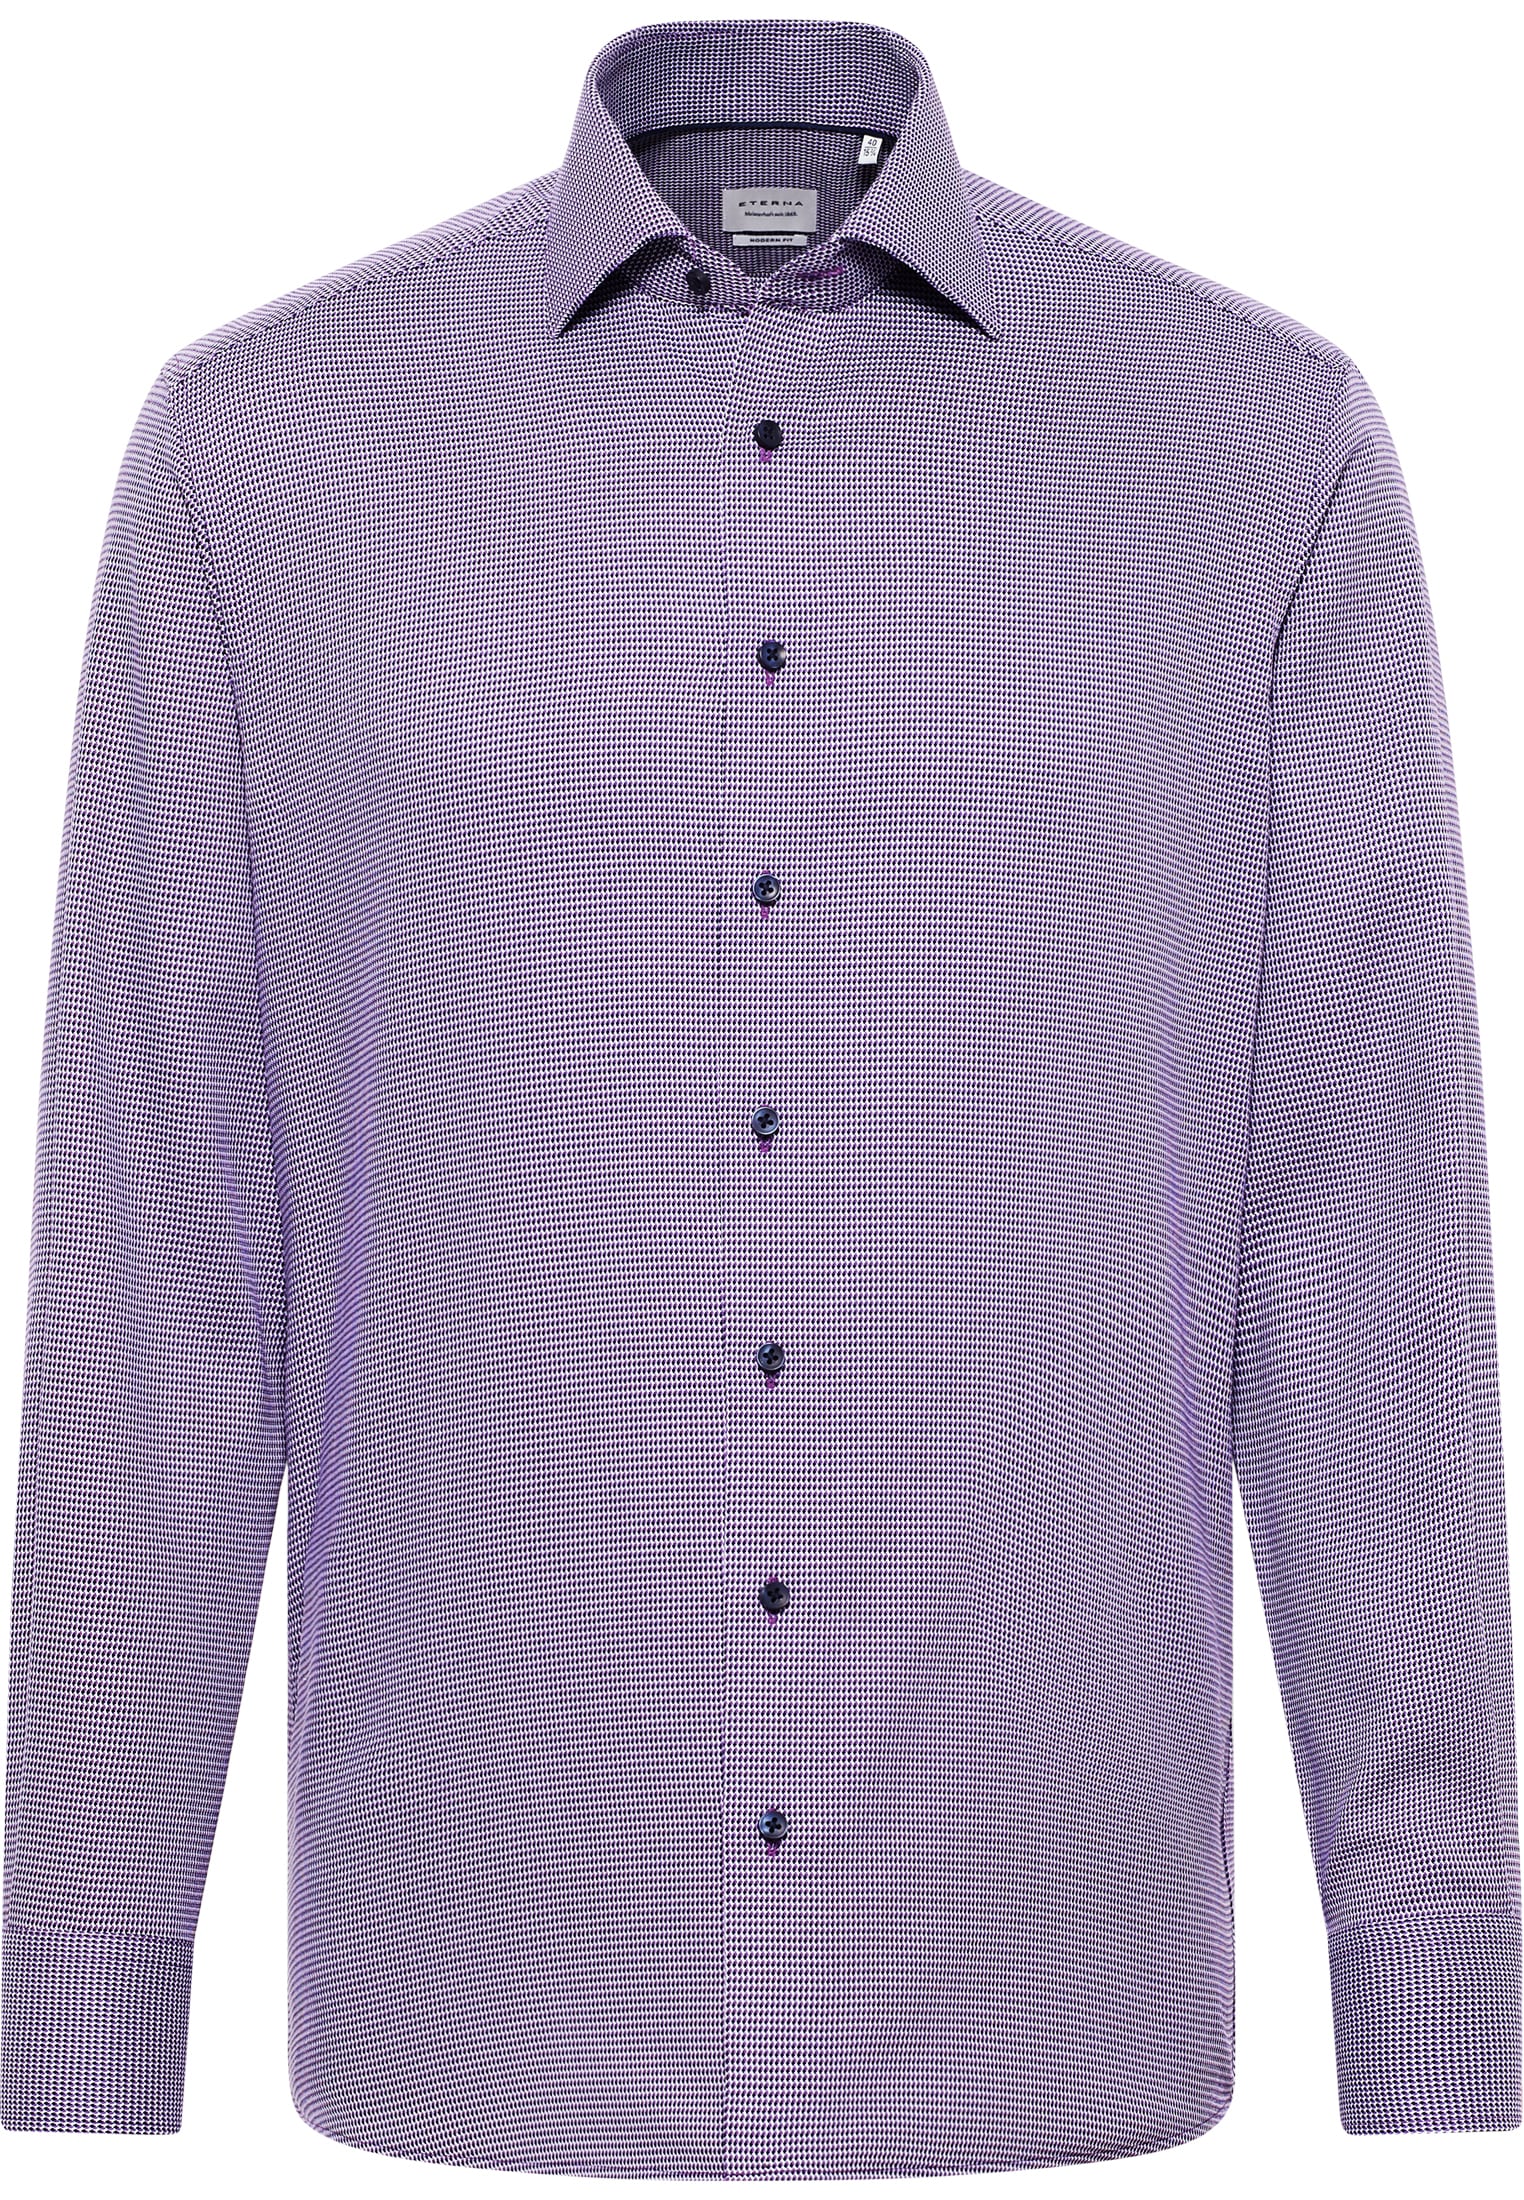 MODERN FIT Hemd in violett strukturiert